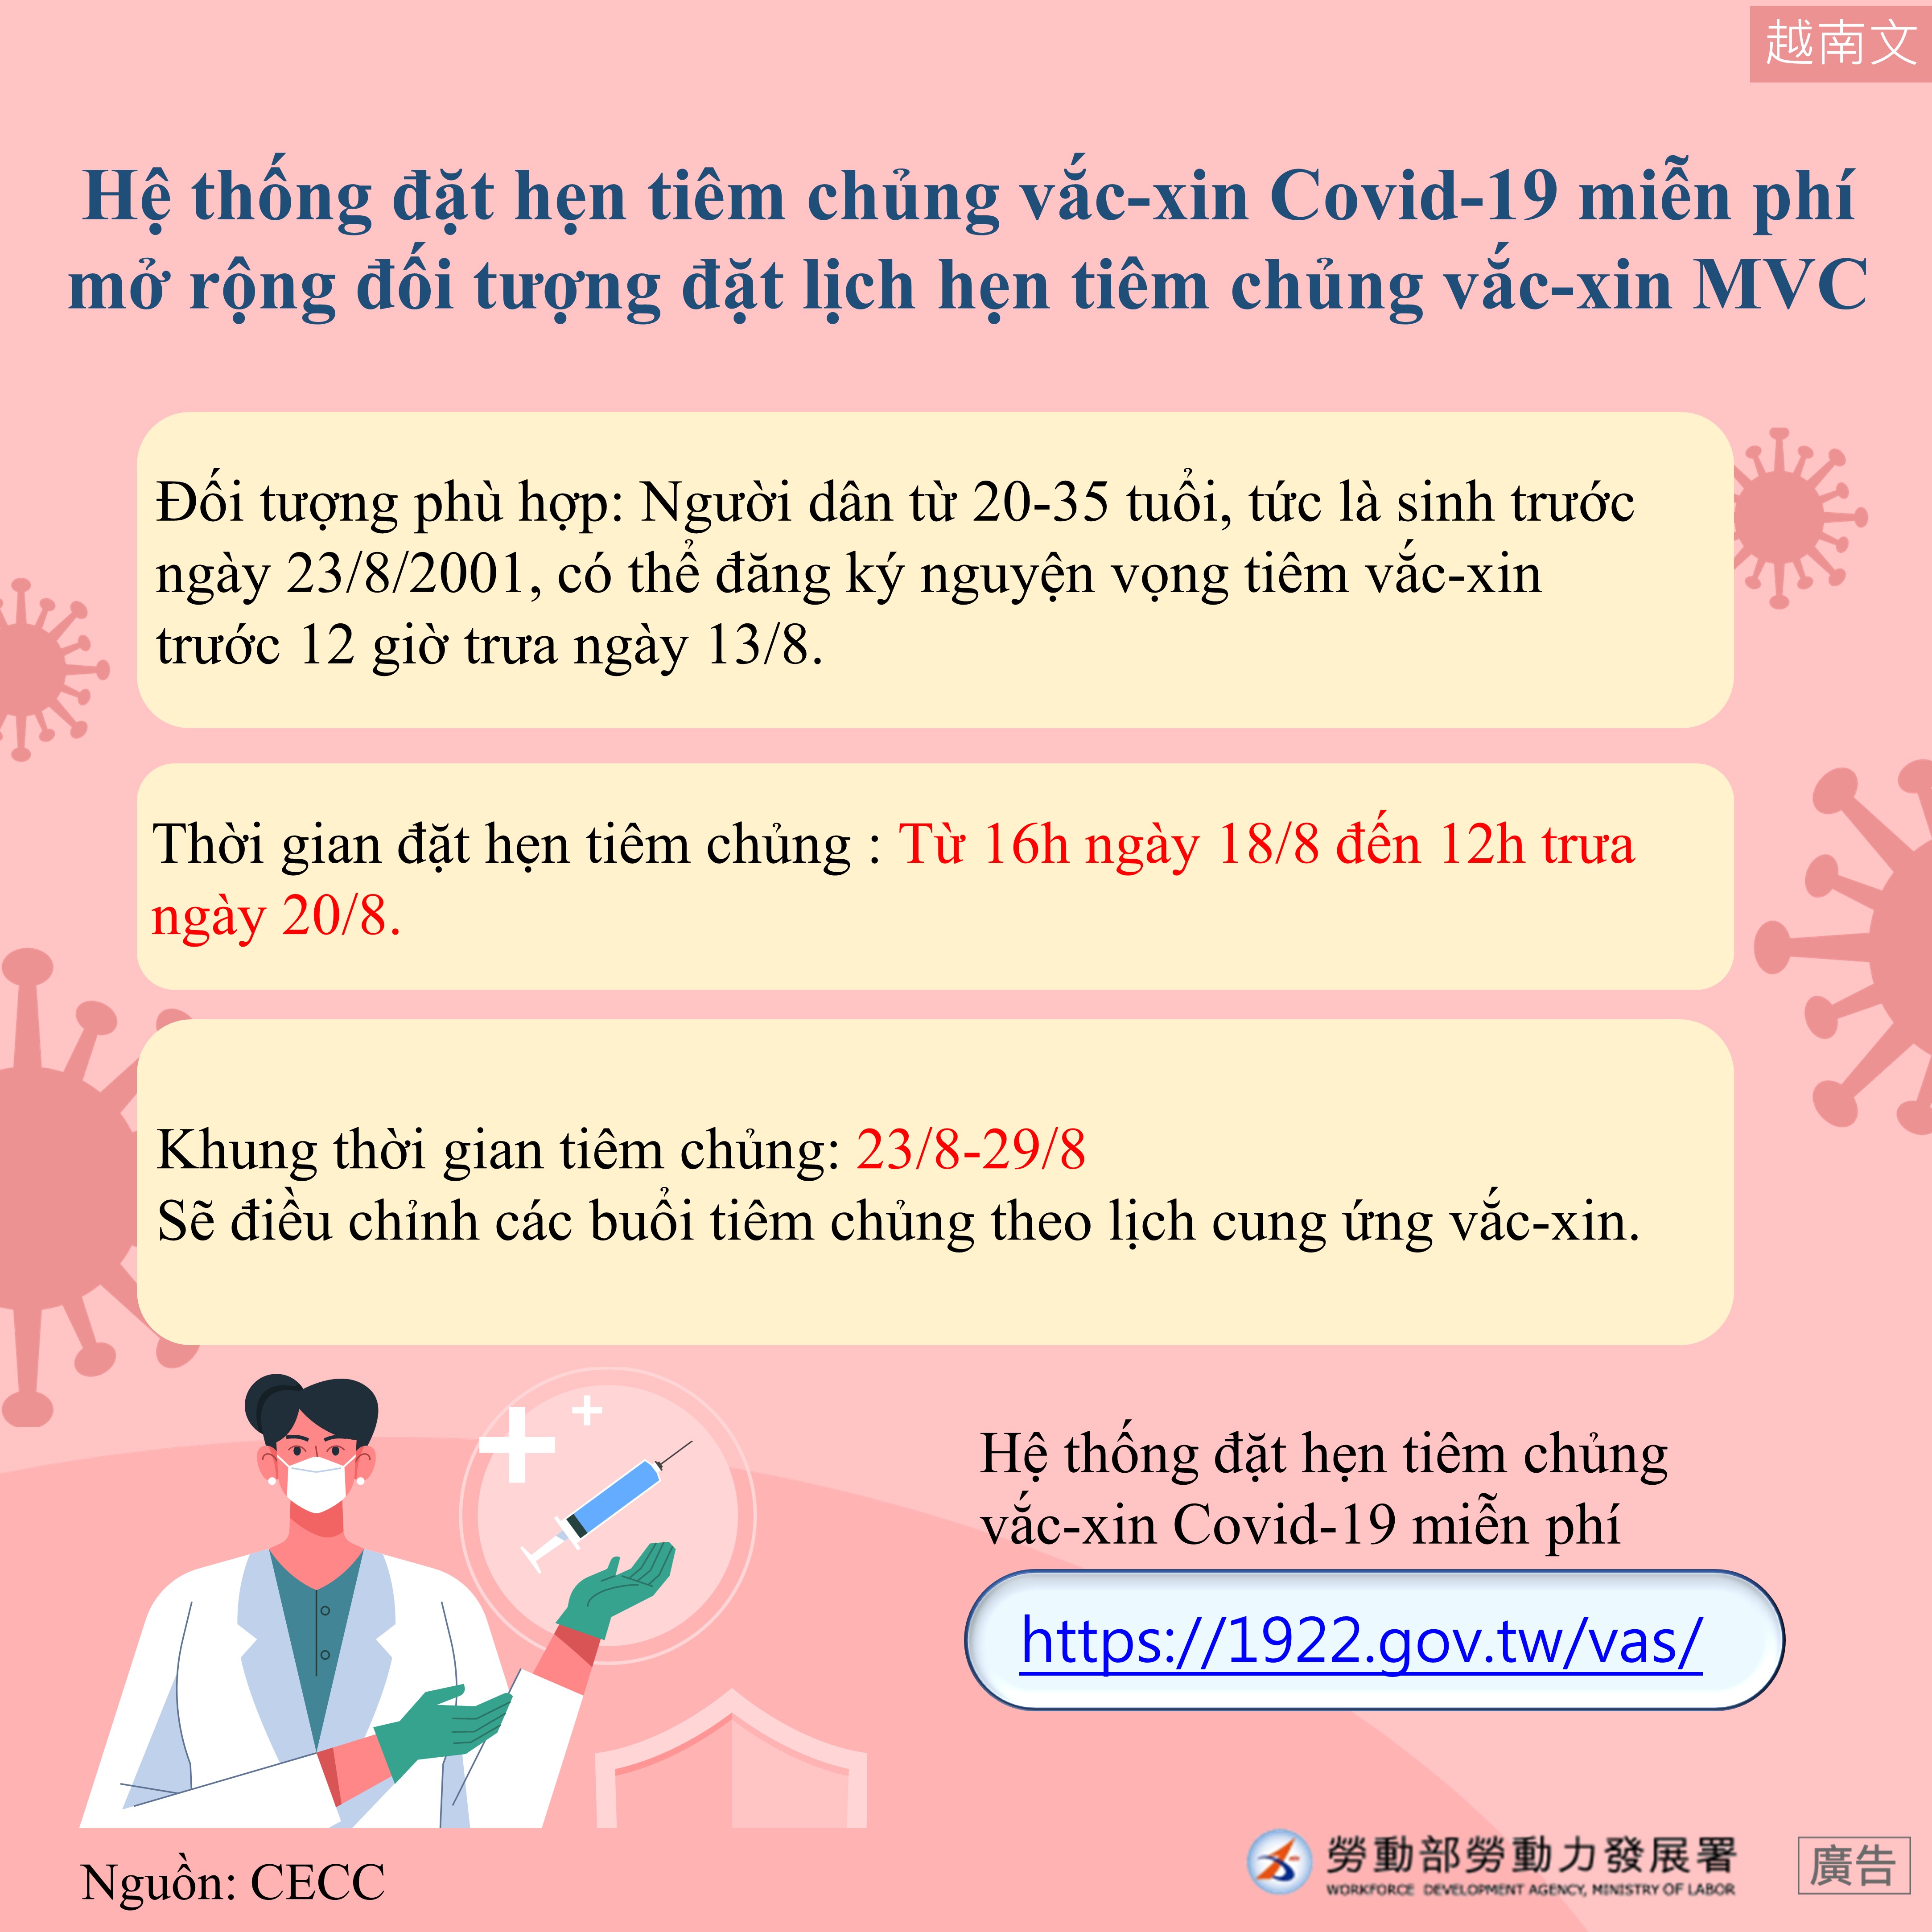 COVID-19公費疫苗預約平台增開高端疫苗預約接種對象-越南文